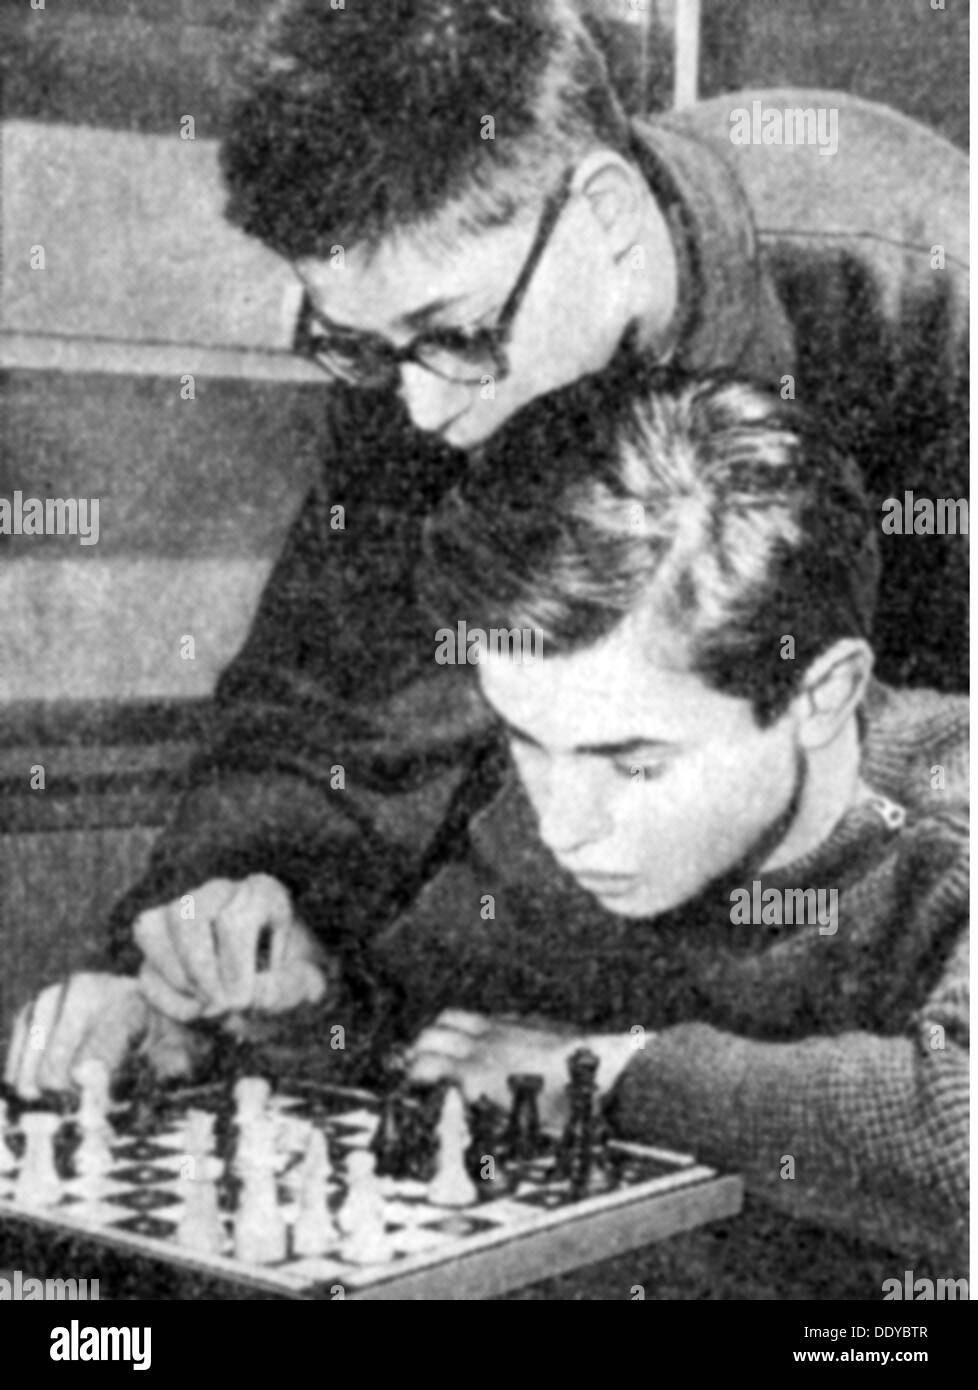 Partie, Schach, zwei Jugendliche spielen Schachspiel, aus: 'Die Brücke', 1964, Additional-Rights-Clearences-not available Stockfoto